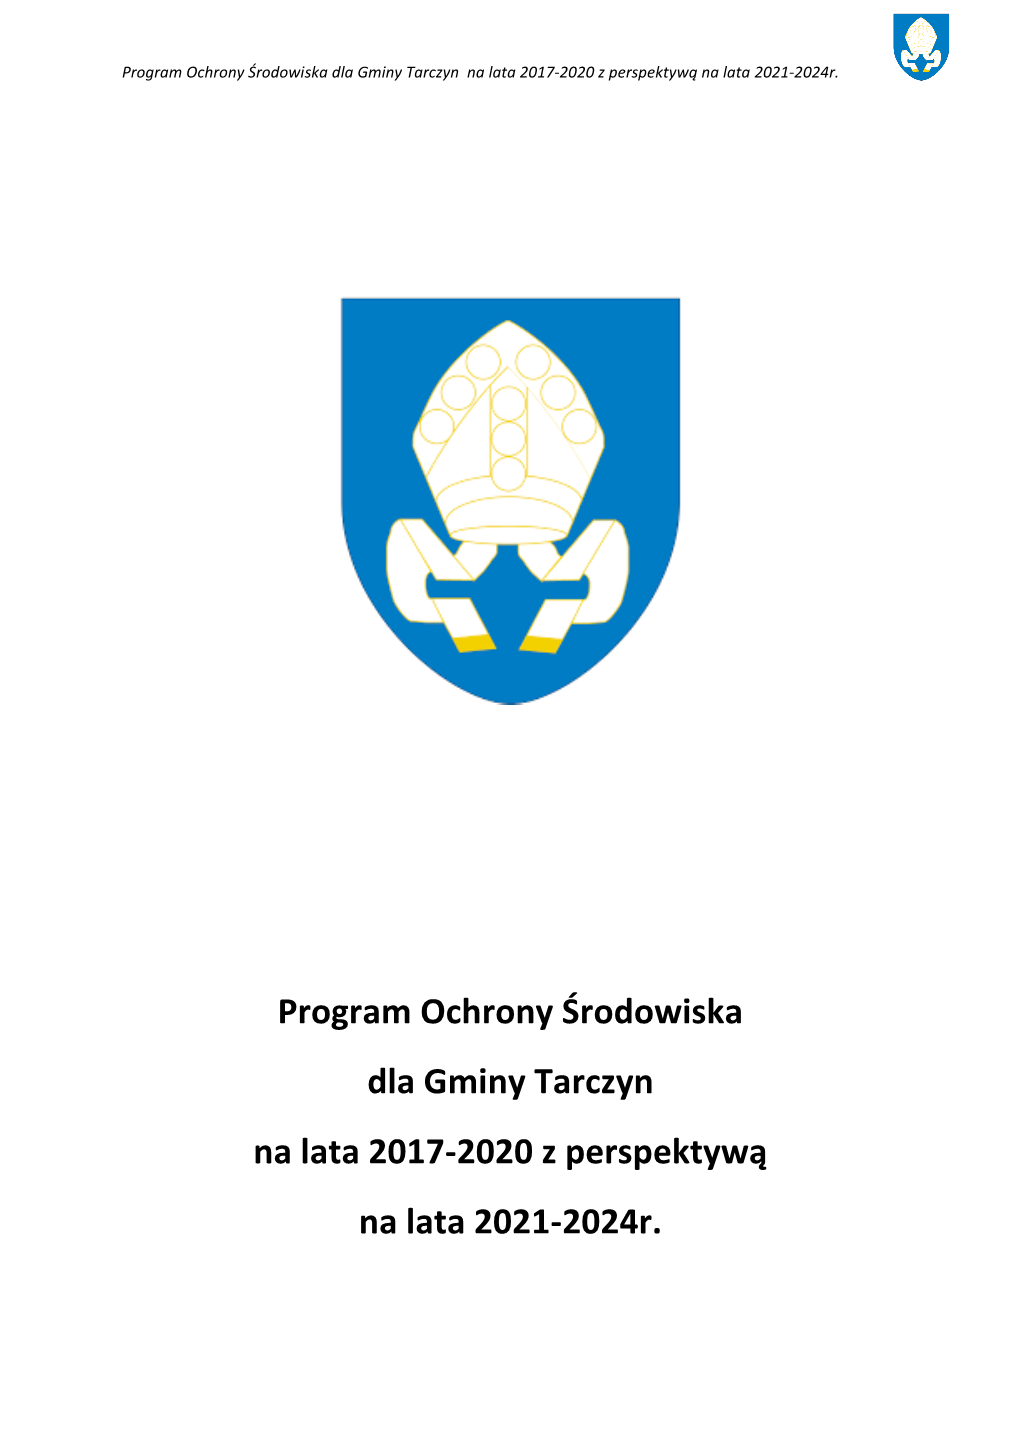 Program Ochrony Środowiska Dla Gminy Tarczyn Na Lata 2017-2020 Z Perspektywą Na Lata 2021-2024R